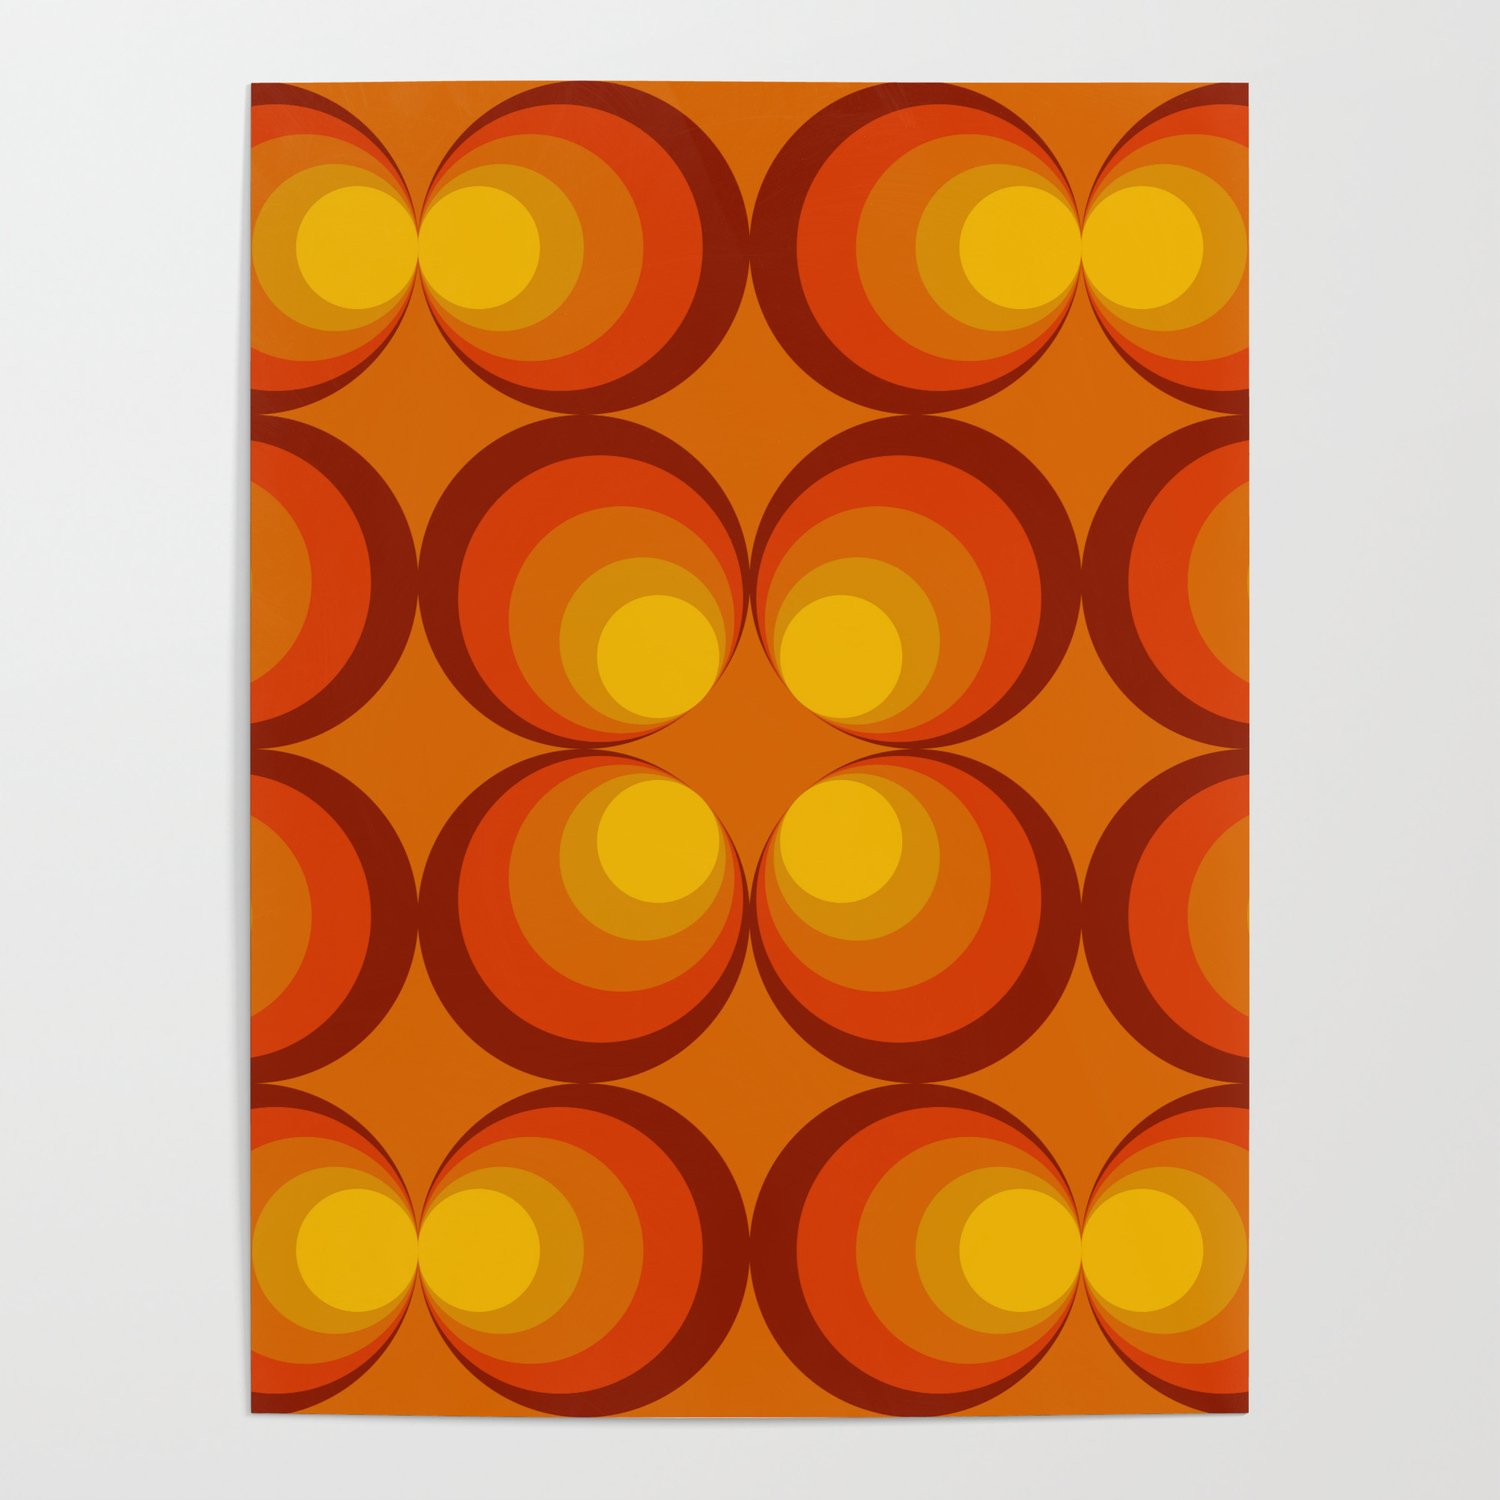 Circle Design (Thiết kế hình tròn), Orange Background (Phông nền màu cam), Poster (Áp phích): Bạn muốn trang trí tường nhà với những thiết kế đơn giản nhưng hiện đại? Hãy tìm kiếm những áp phích với thiết kế hình tròn đơn giản và màu cam rực rỡ. Với sự kết hợp độc đáo này, bạn sẽ tăng thêm vẻ sáng tạo vào không gian sống của mình.